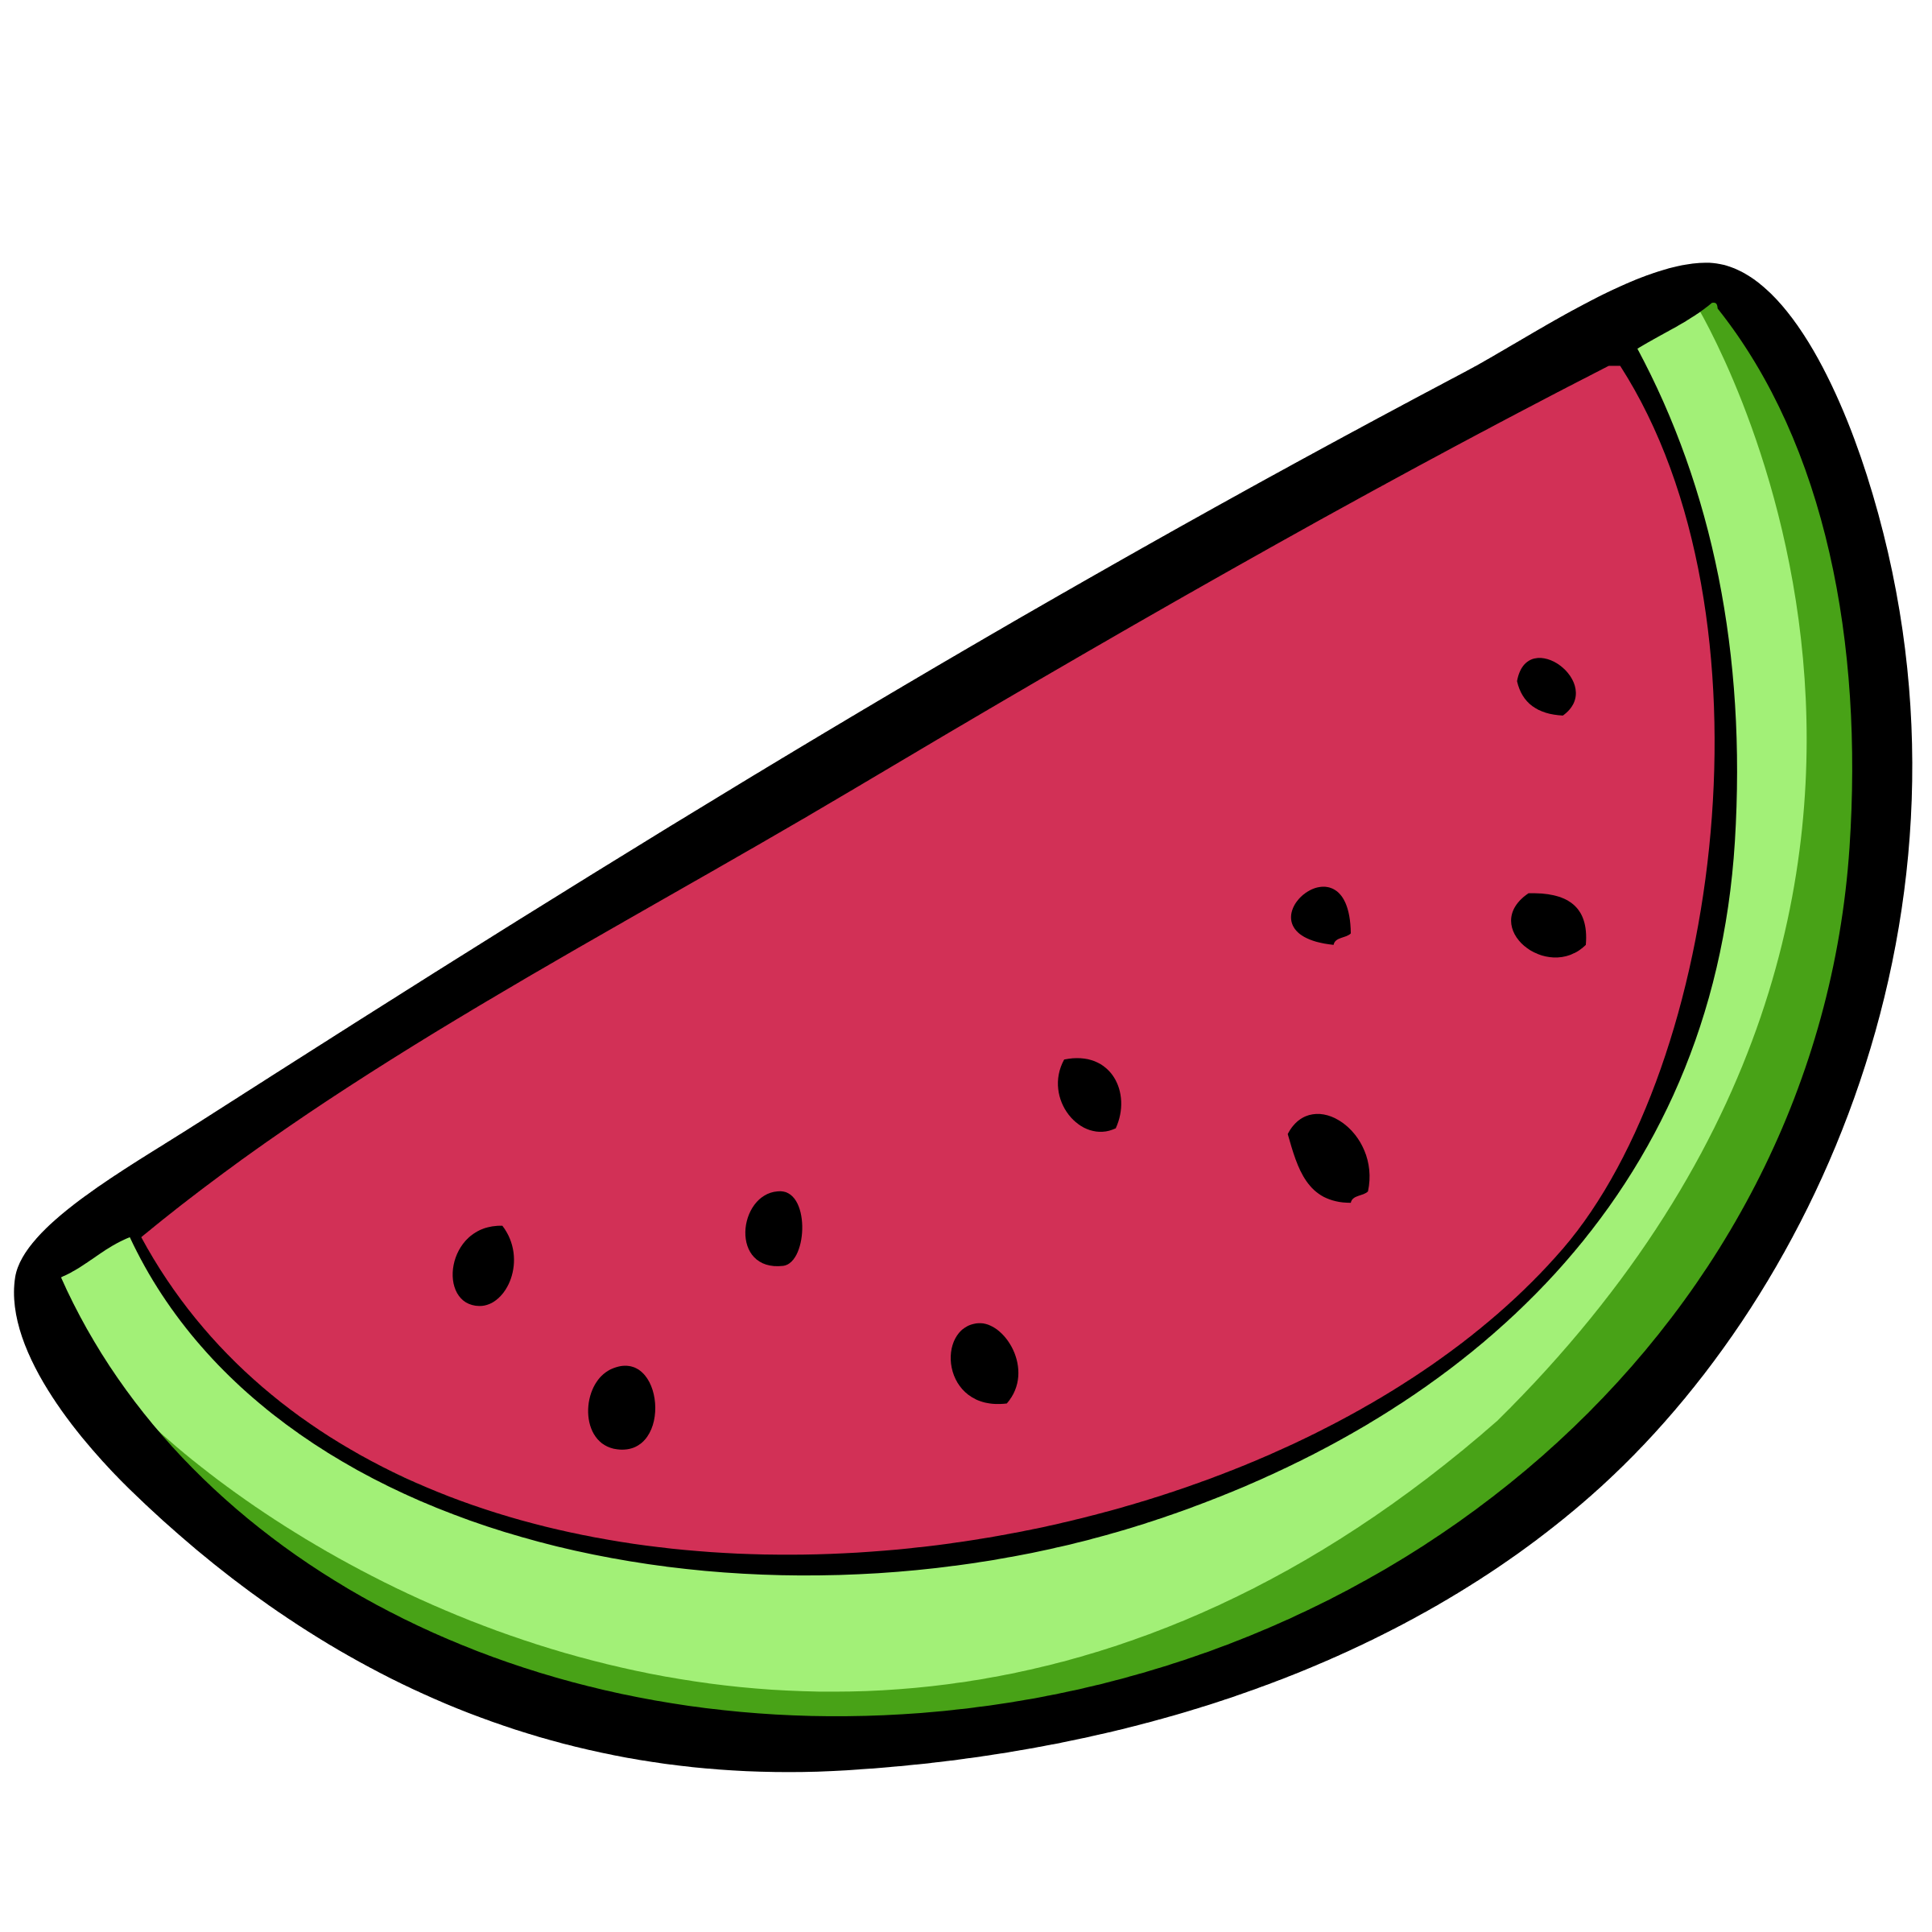 free-watermelon-clip-art-black-and-white-download-free-watermelon-clip